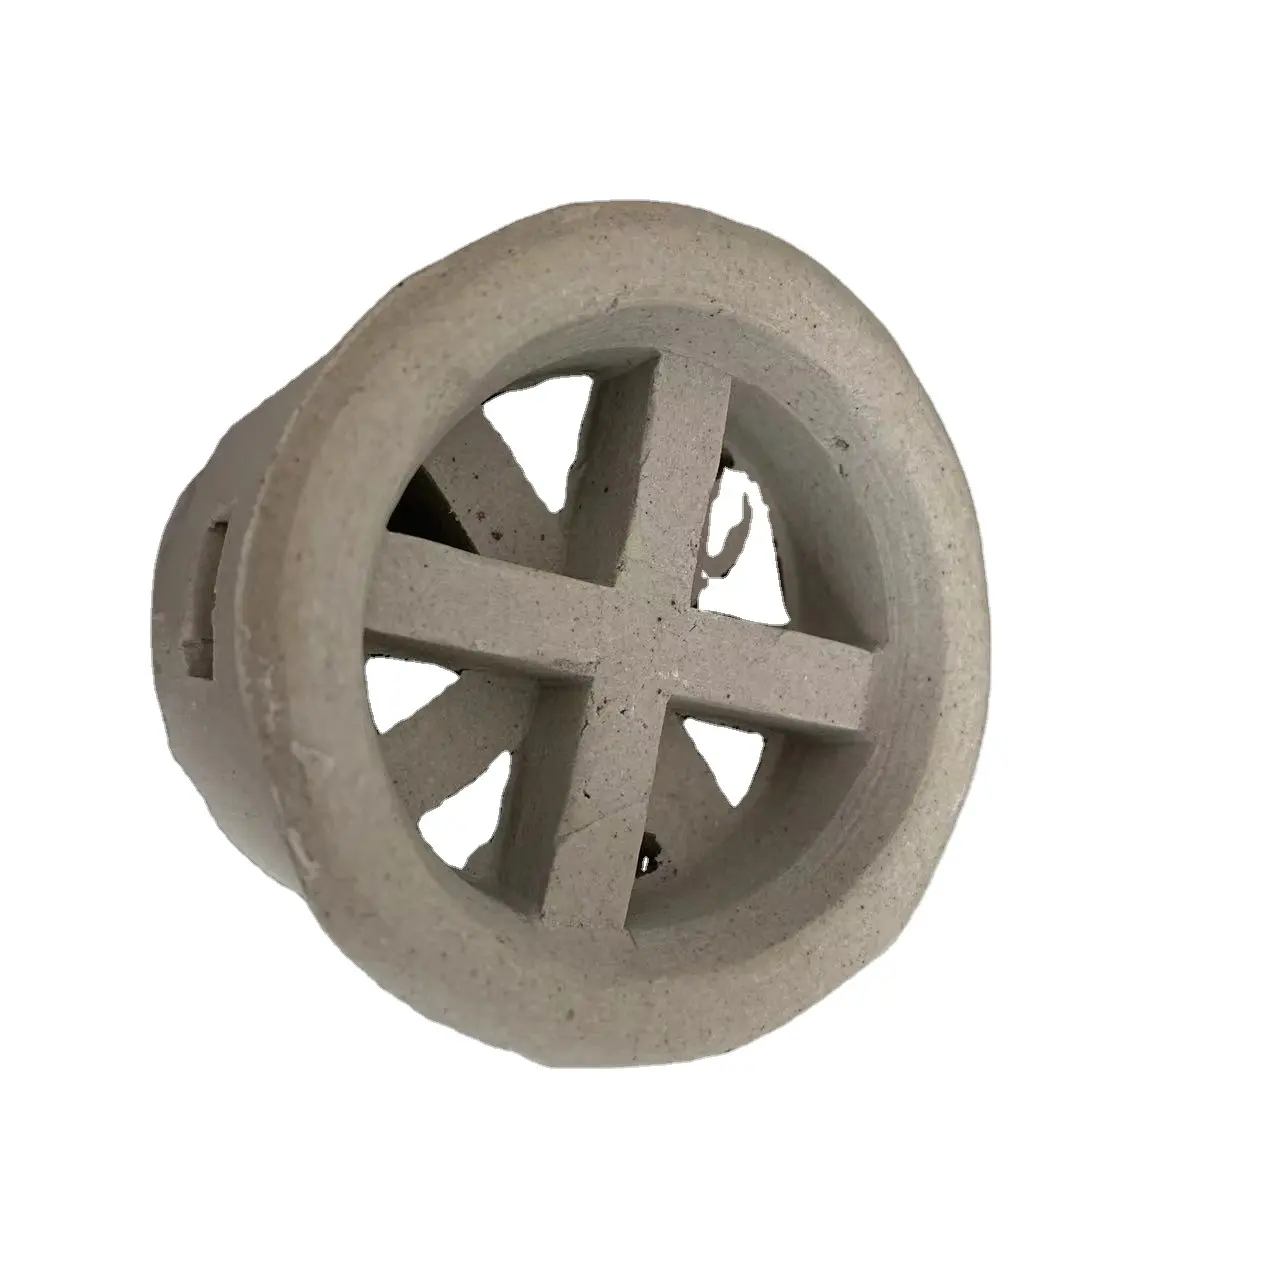 Производство ступенчатых колец с несколькими спецификациями промышленных керамических наполнителей